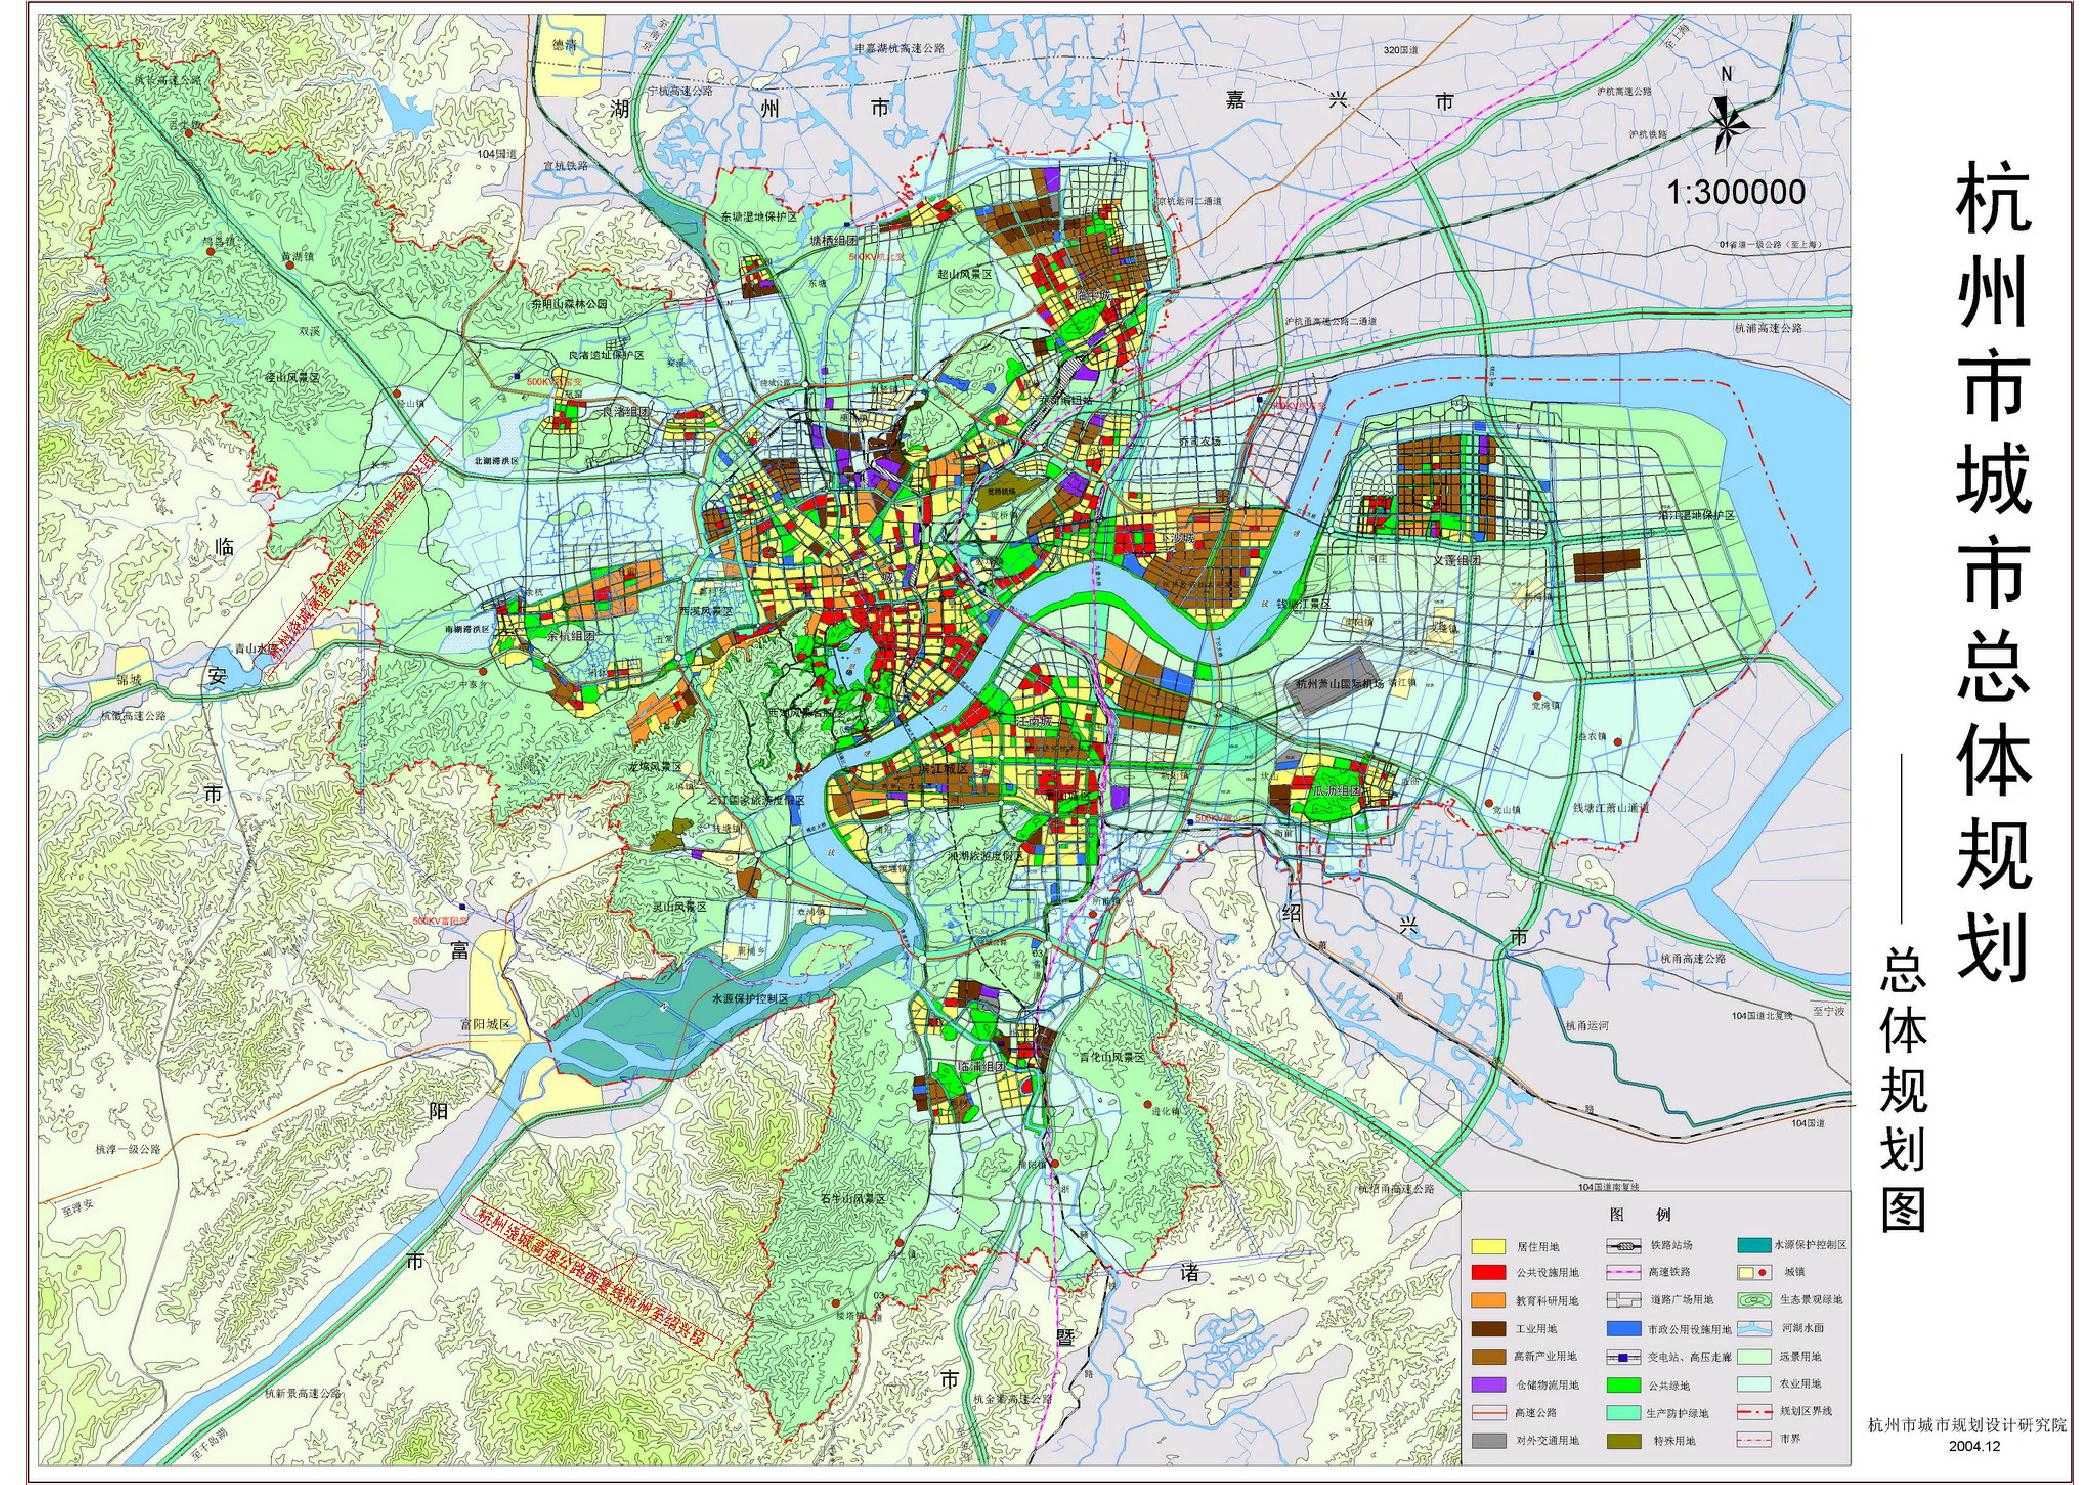 杭州市城市总体规划 这是媒体解读:杭州市城市总体规划(2001